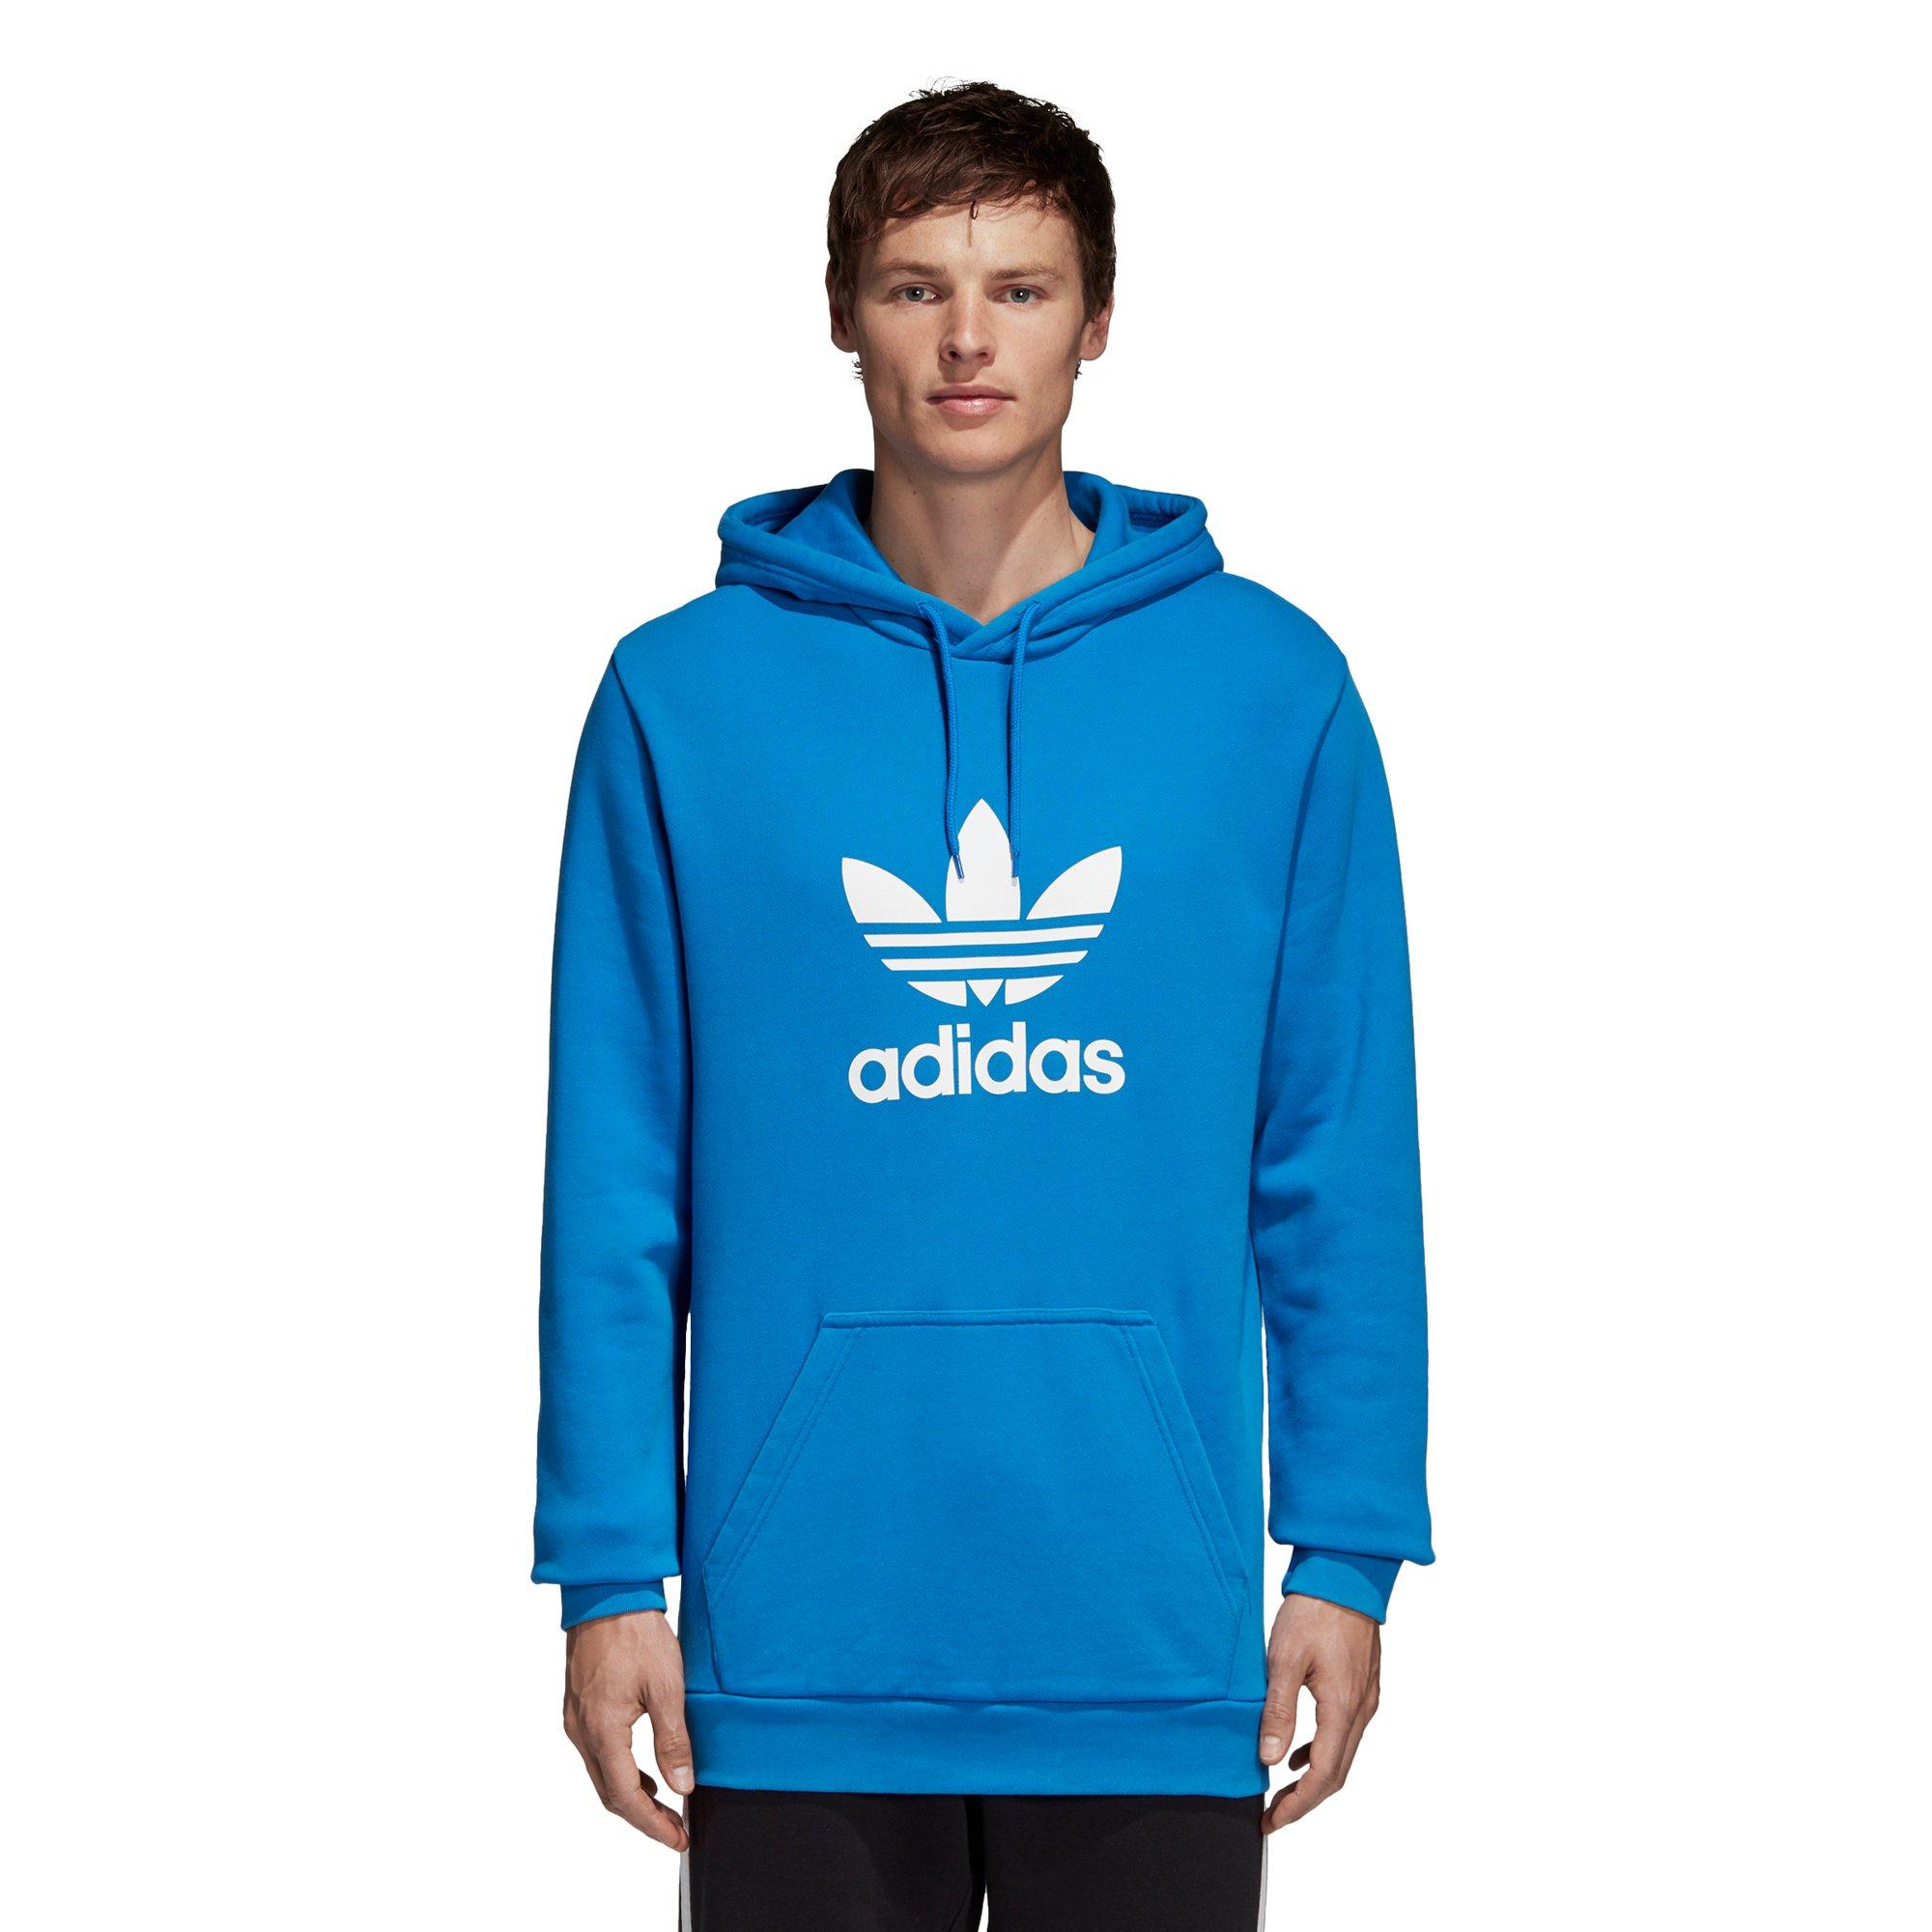 adidas bluebird hoodie